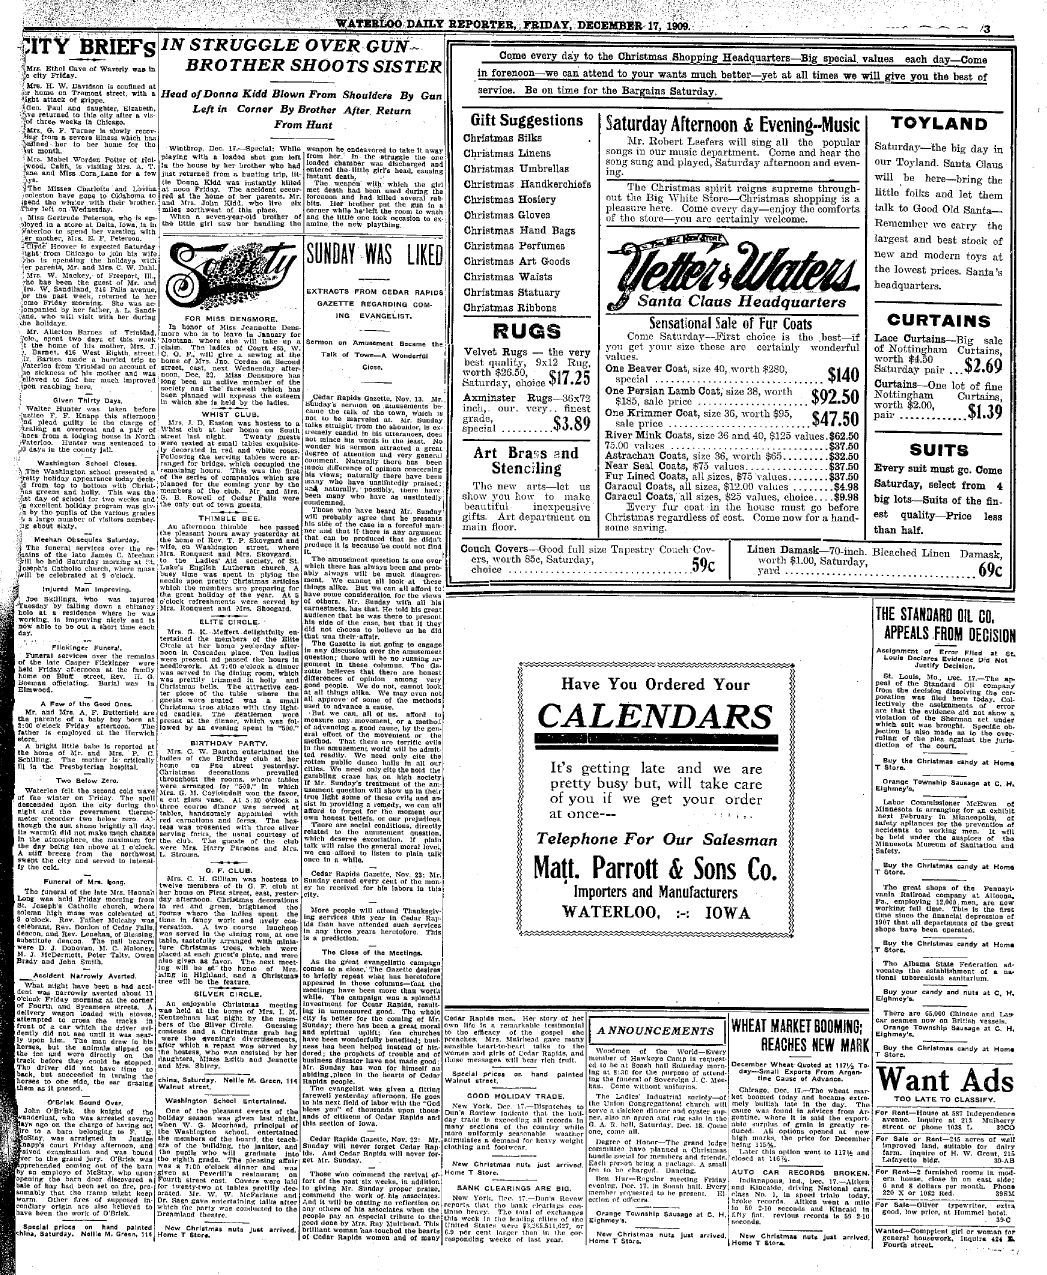 1909 ads